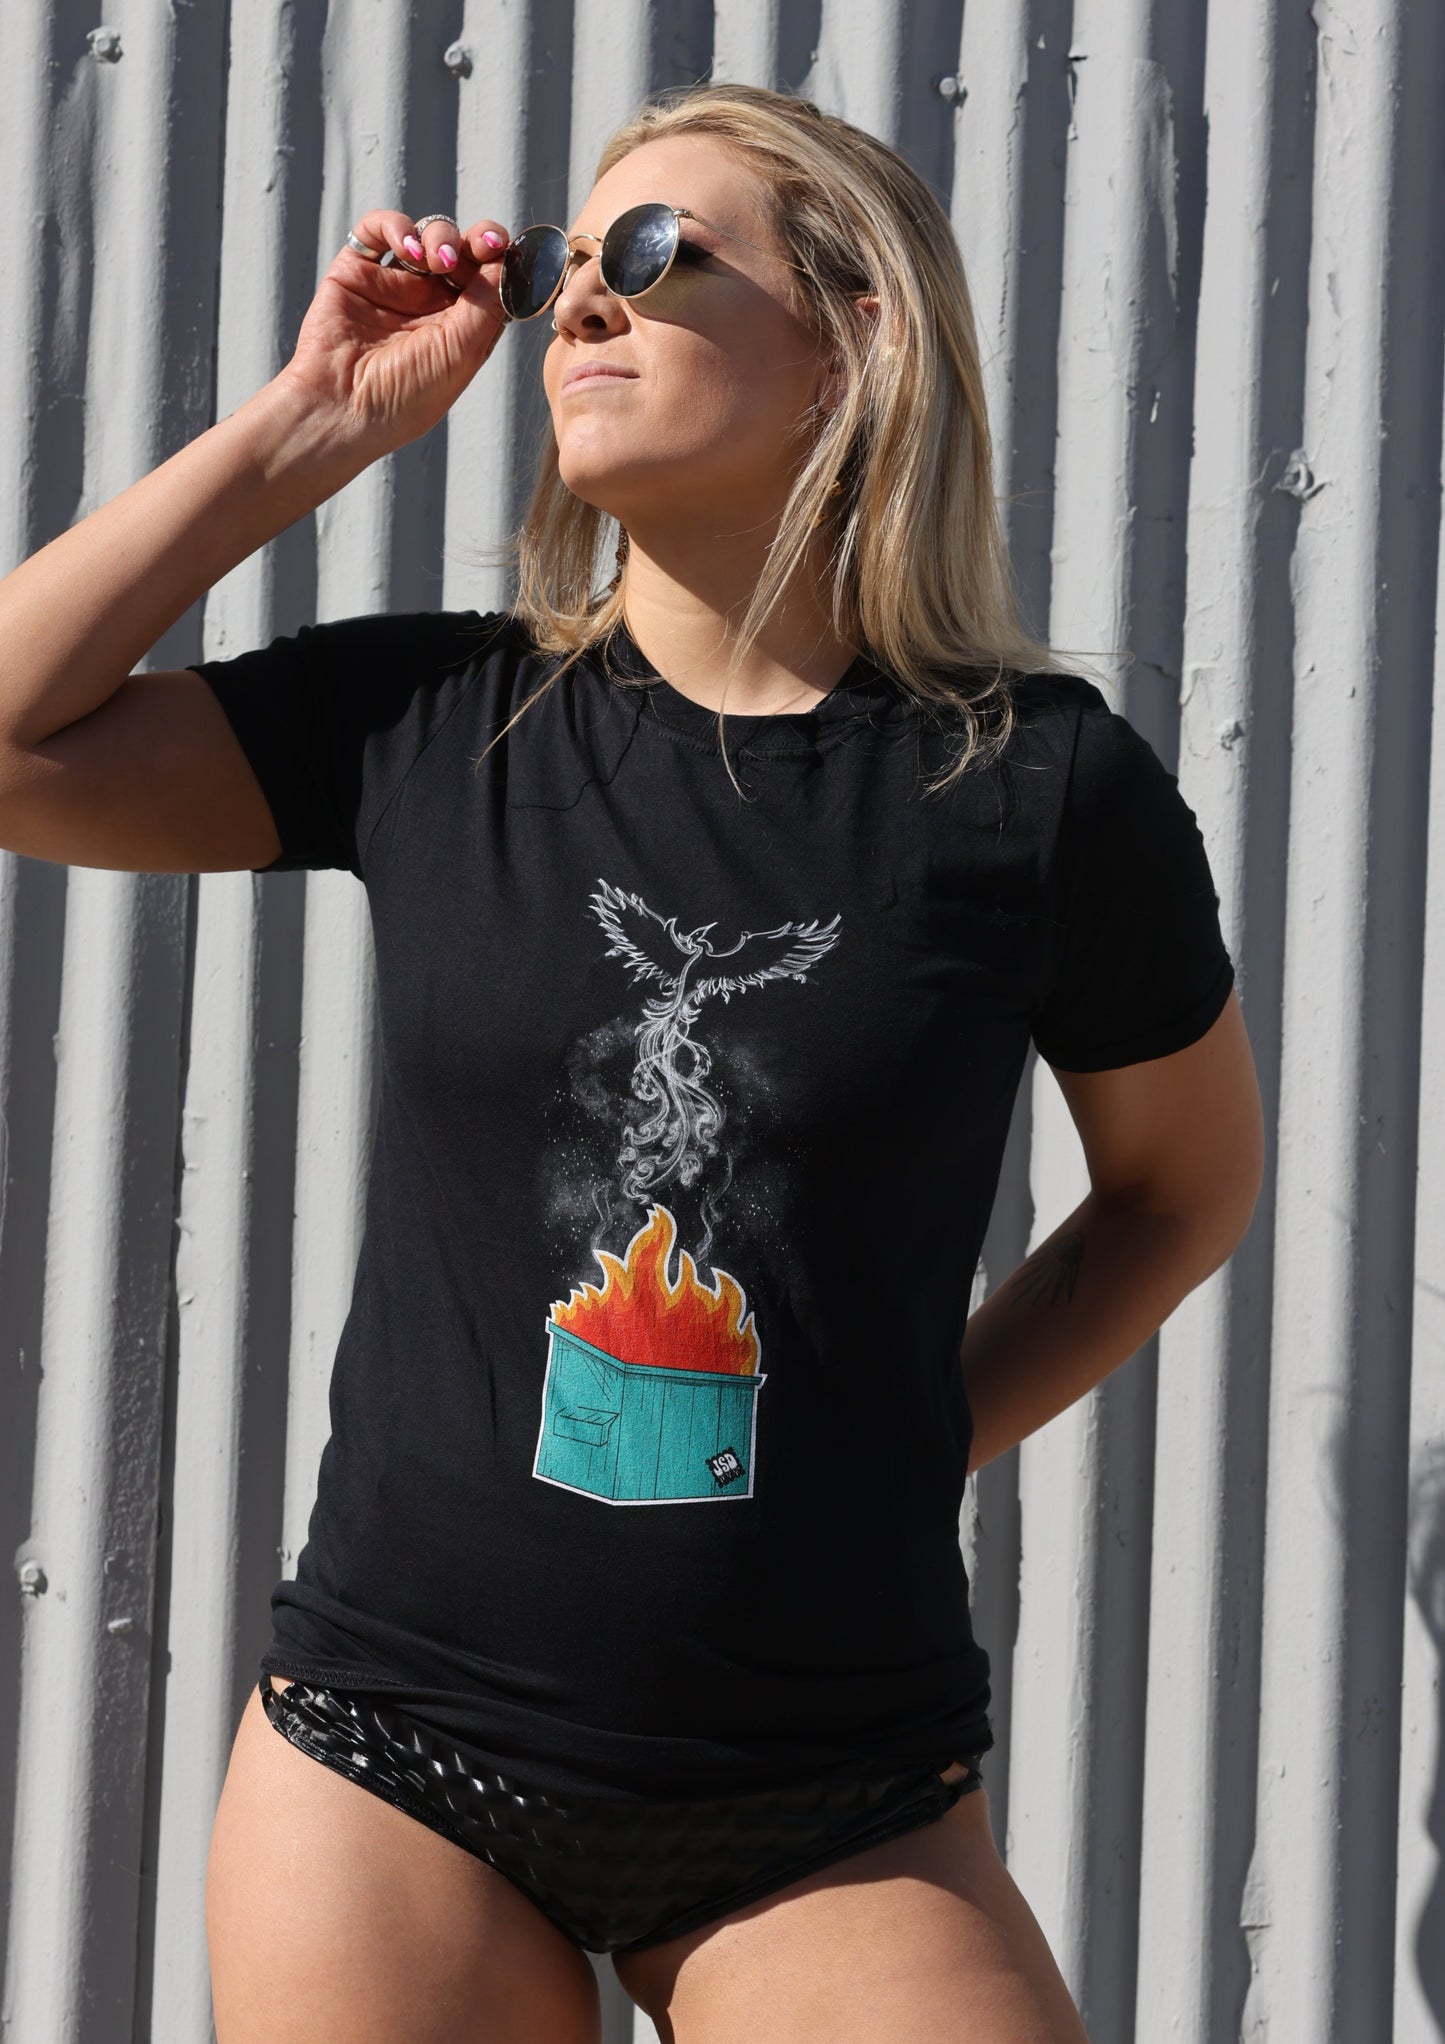 Phoenix Dumpster Fire Rising Unisex T-Shirt